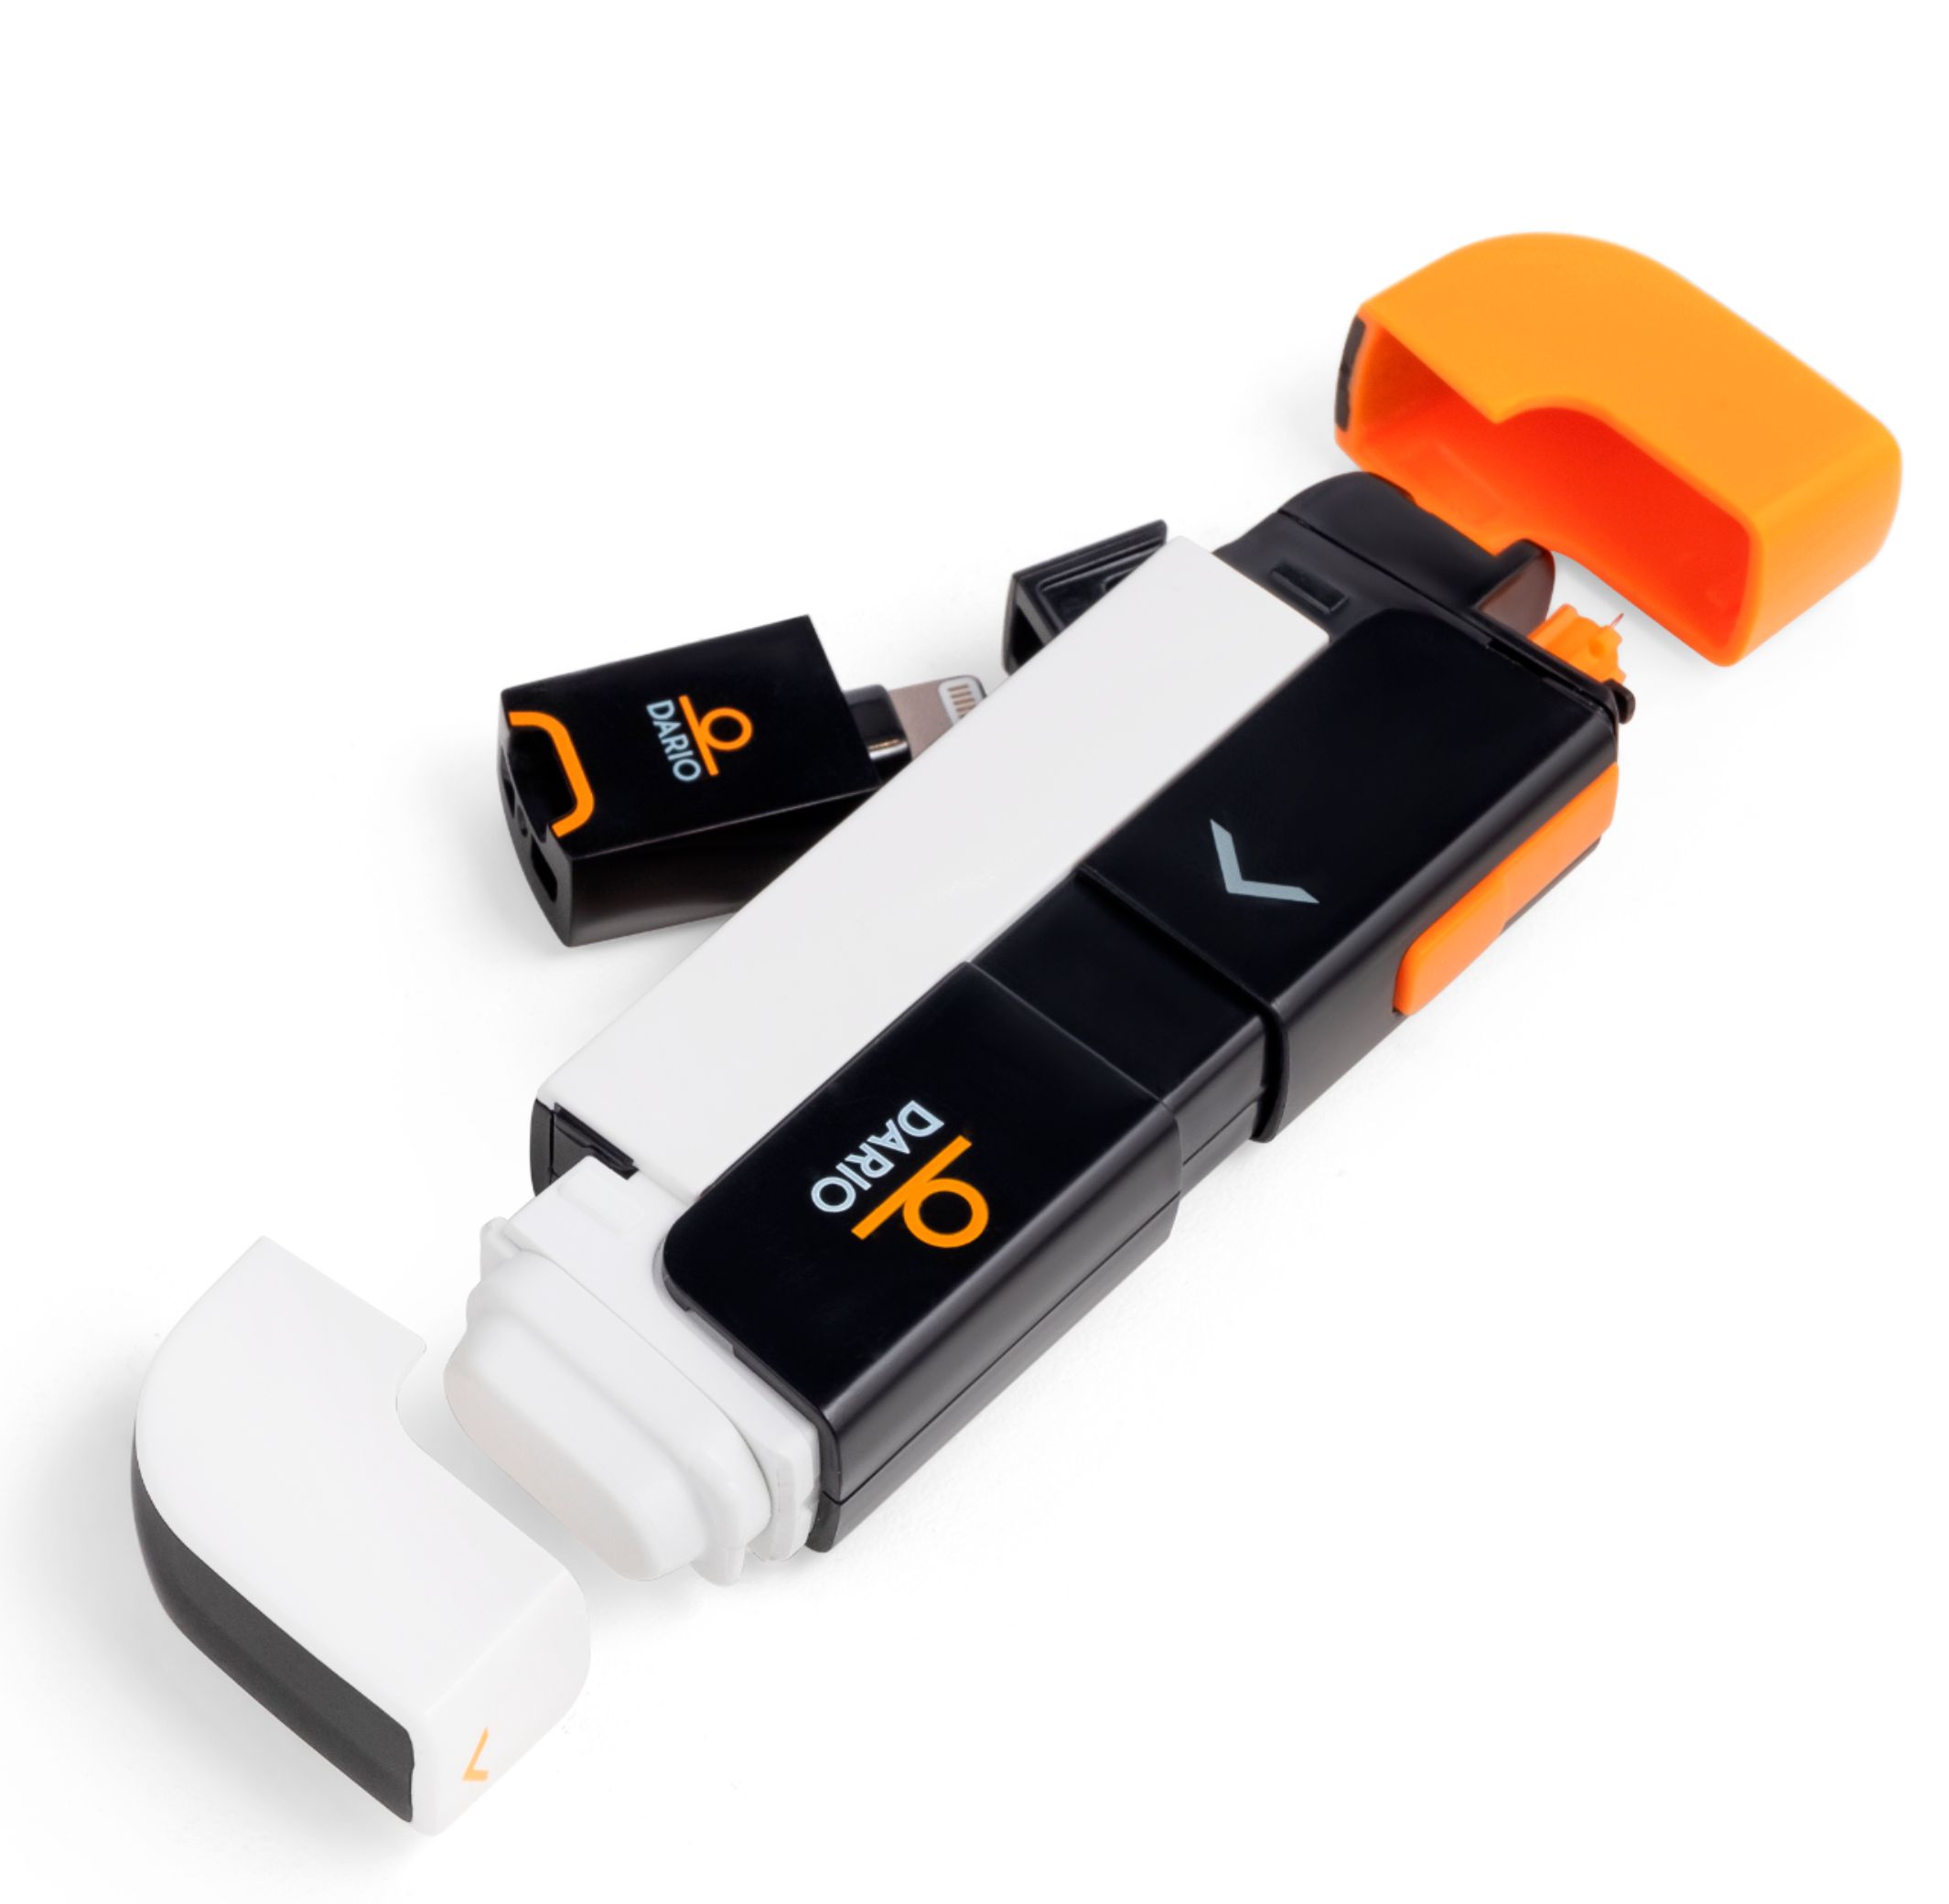 Dario Blood Glucose Monitoring Starter Kit